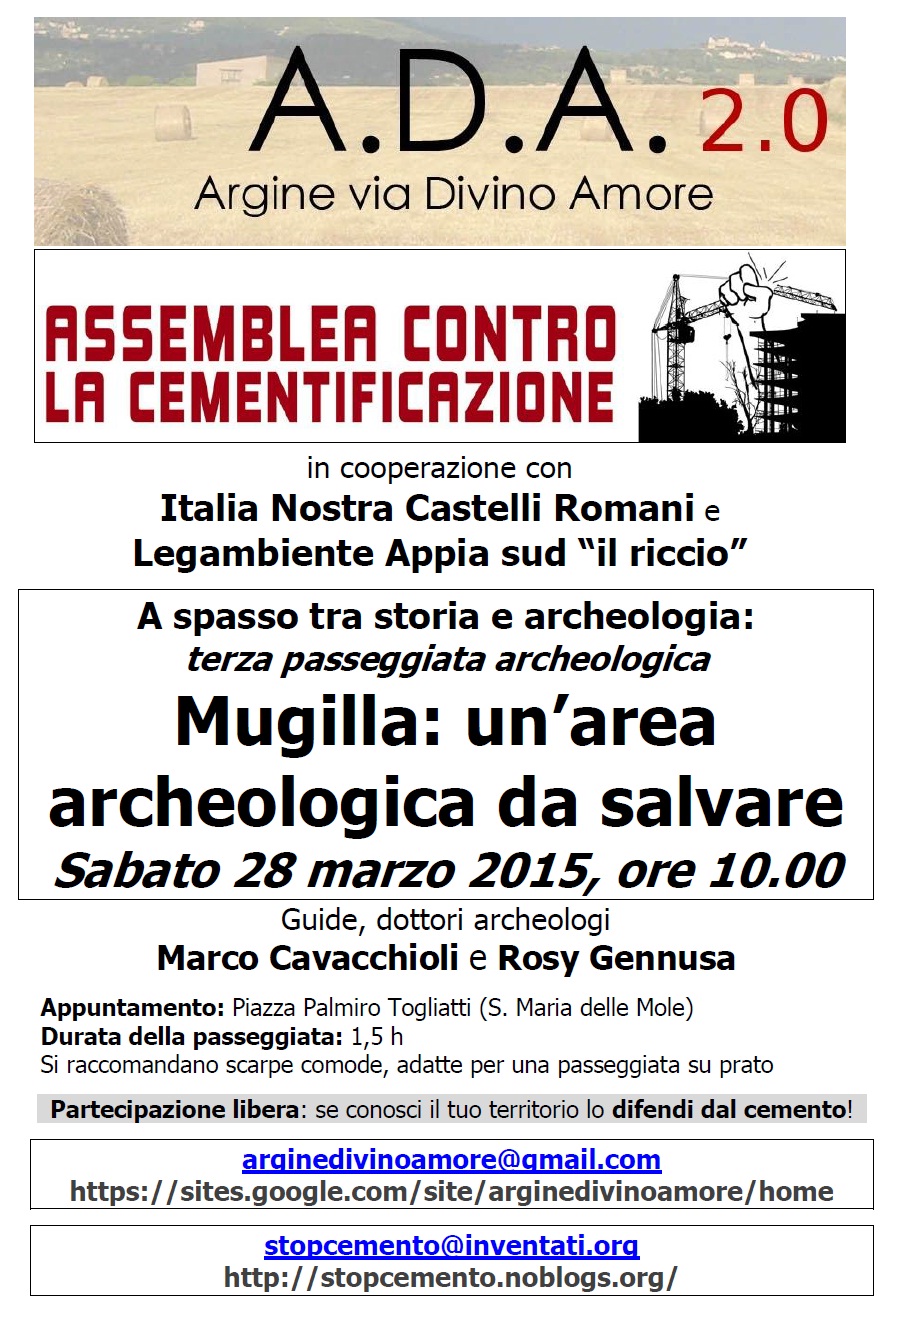 Incontro pubblico sabato 16 maggio, in piazza a S. Maria delle Mole. ACC  contro la cementificazione di Marino.